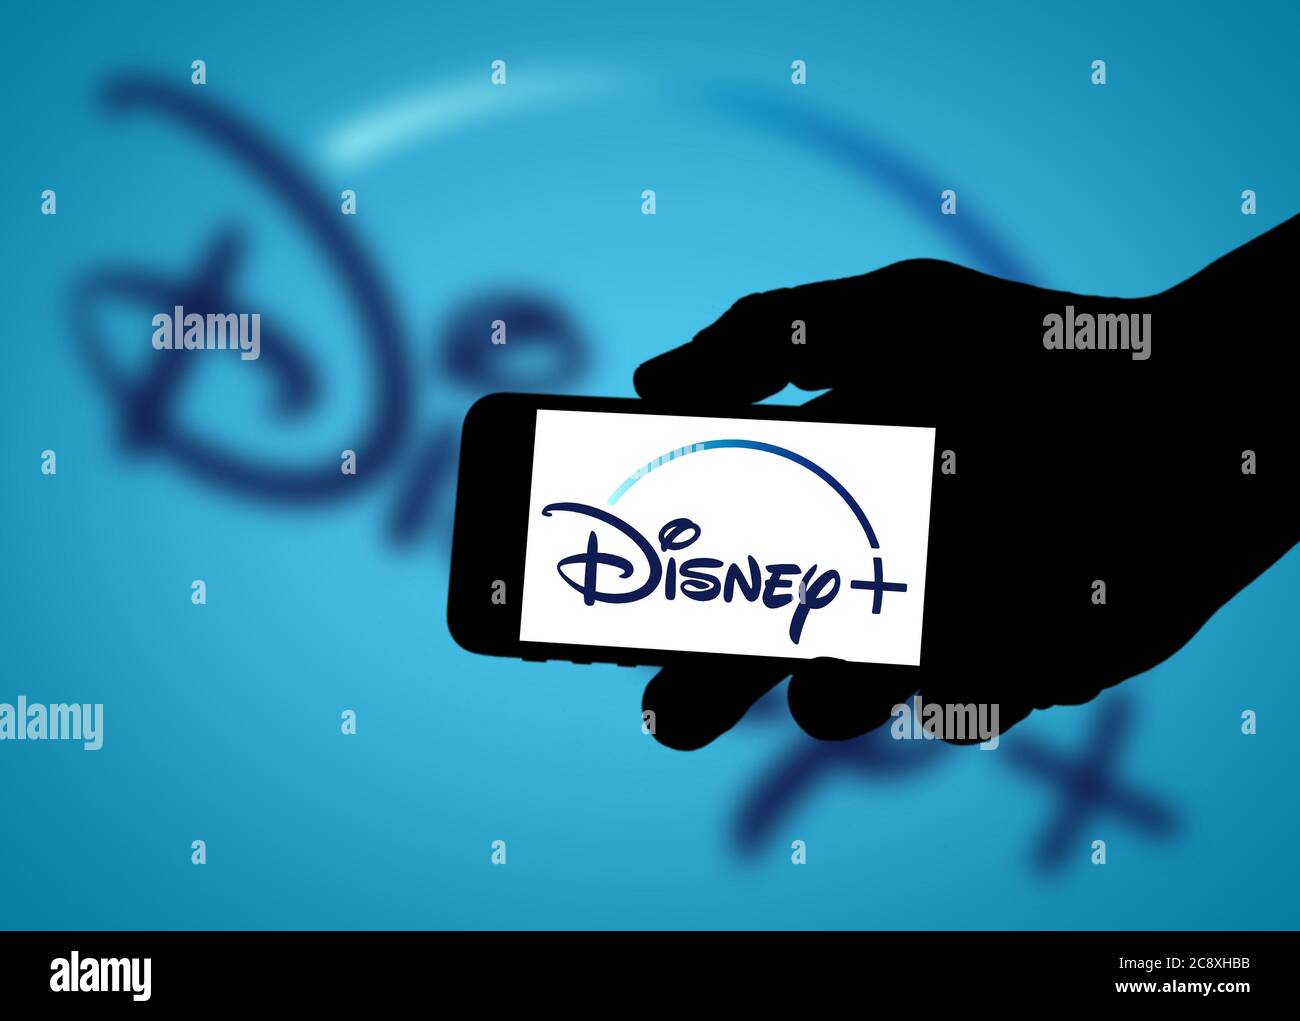 Disney Plus logo Stock Photo